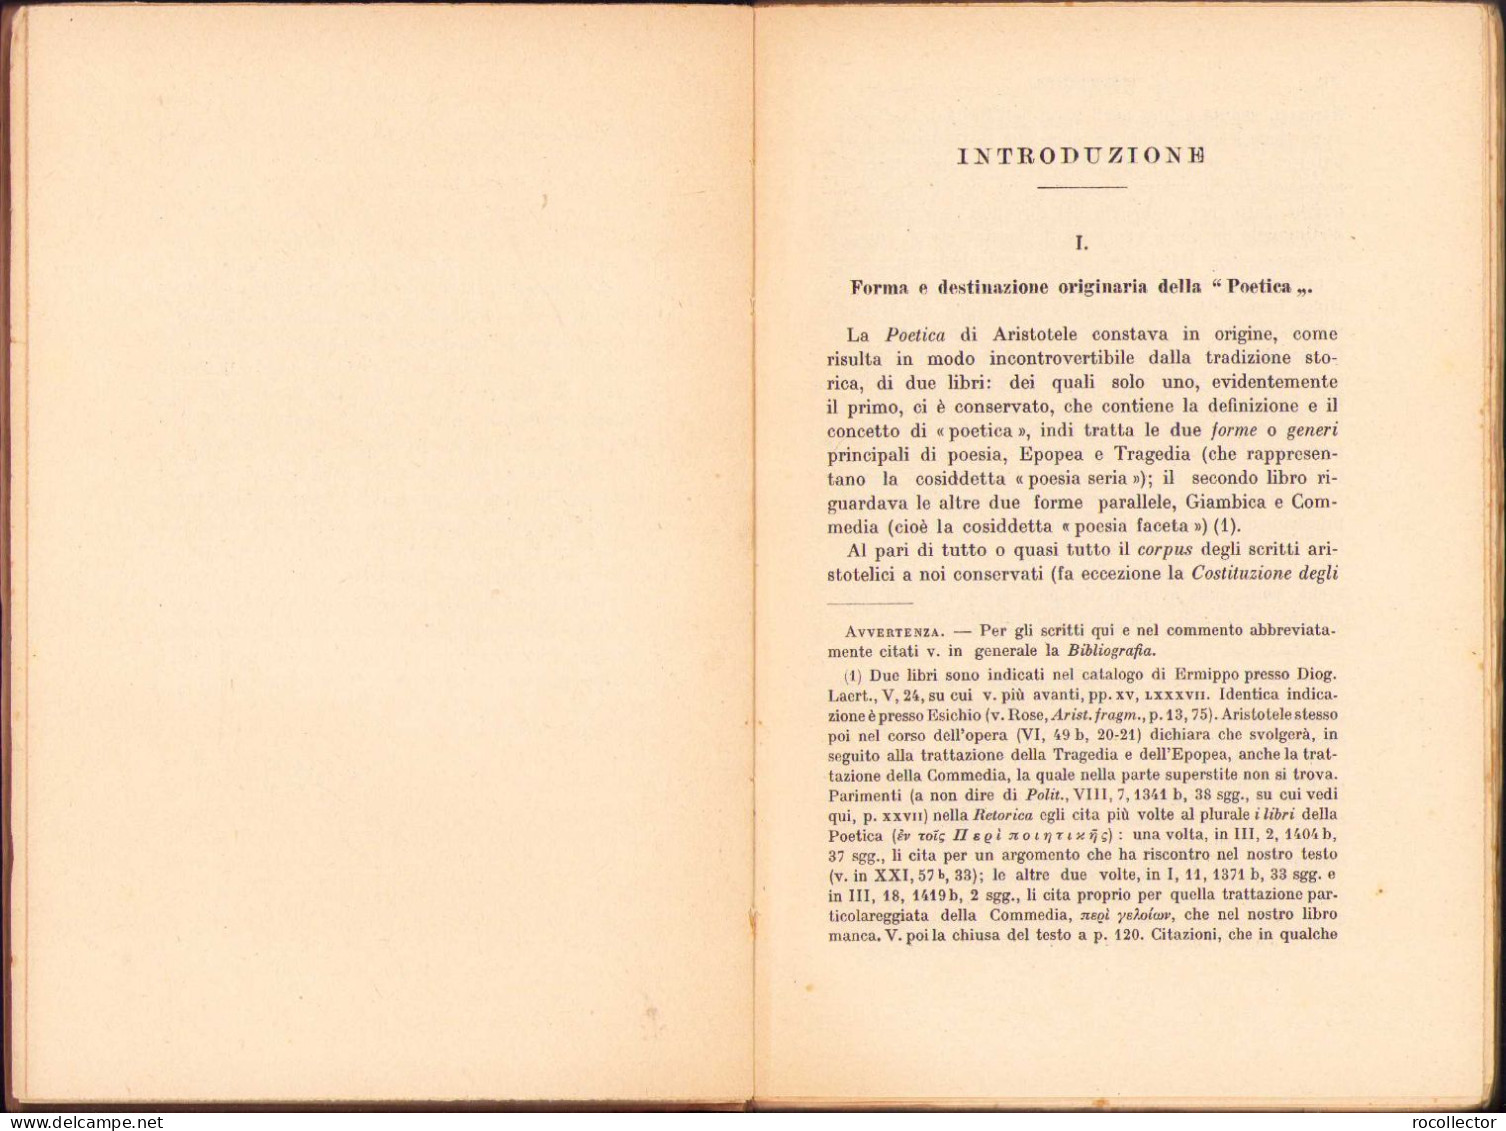 La Poetica Di Aristotele Di Augusto Rostagni, 1934 C999 - Old Books